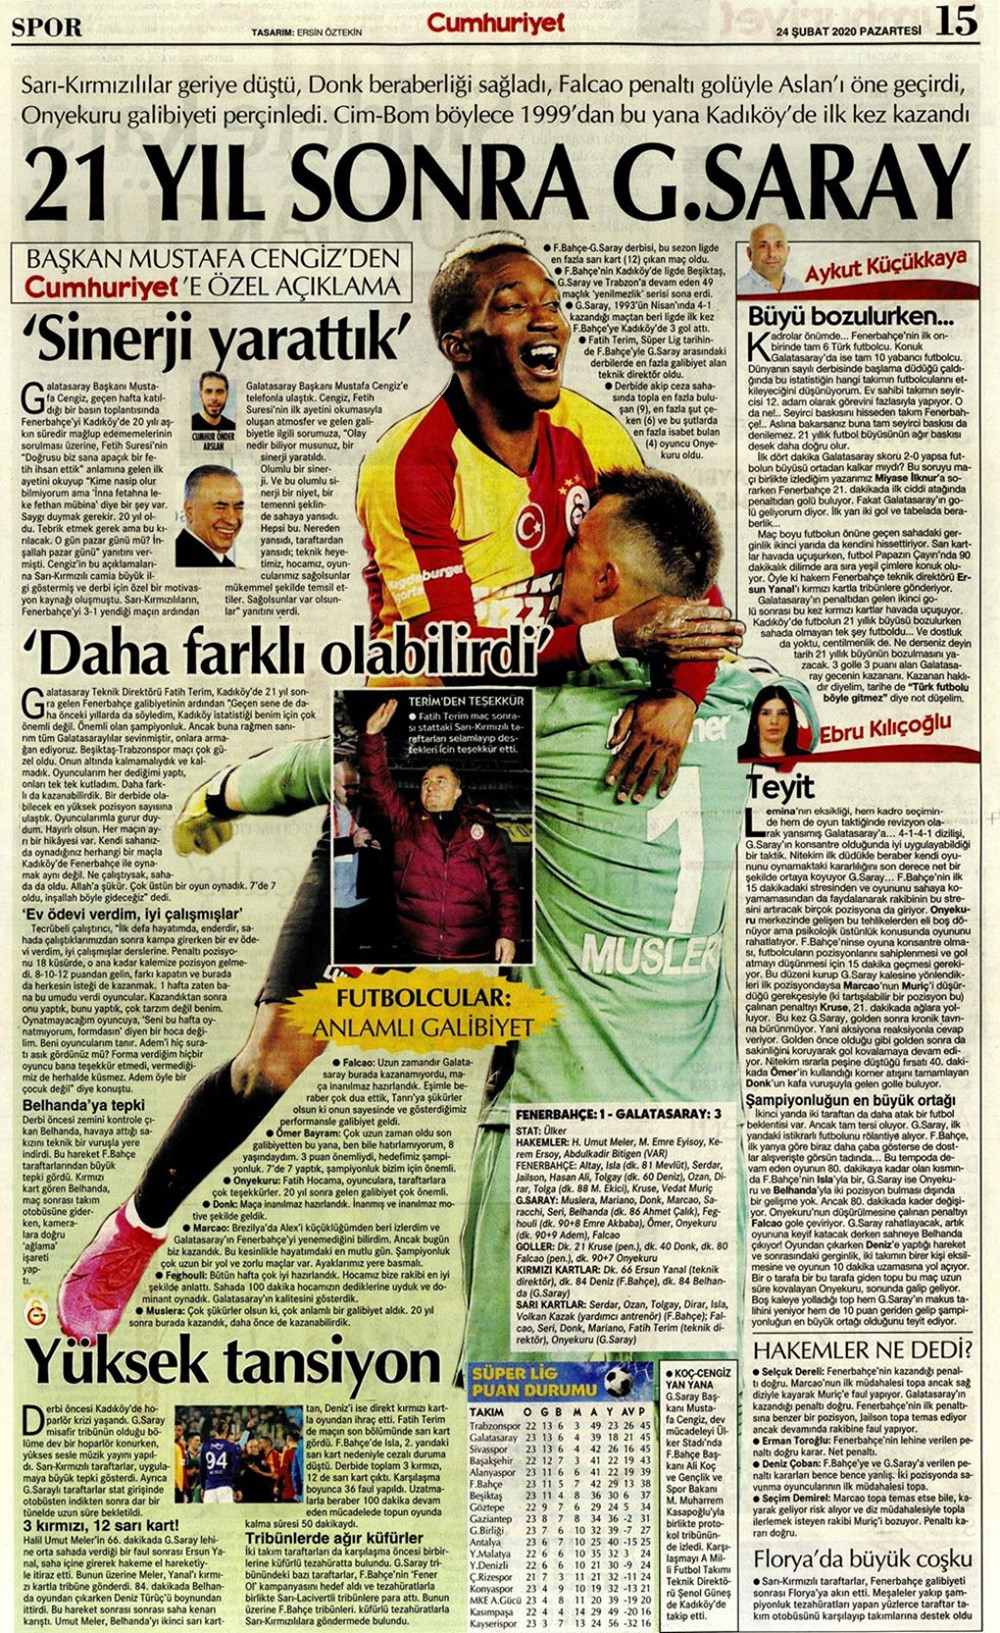 Fenerbahçe Galatasaray derbisini hangi gazete nasıl gördü? - Resim: 3